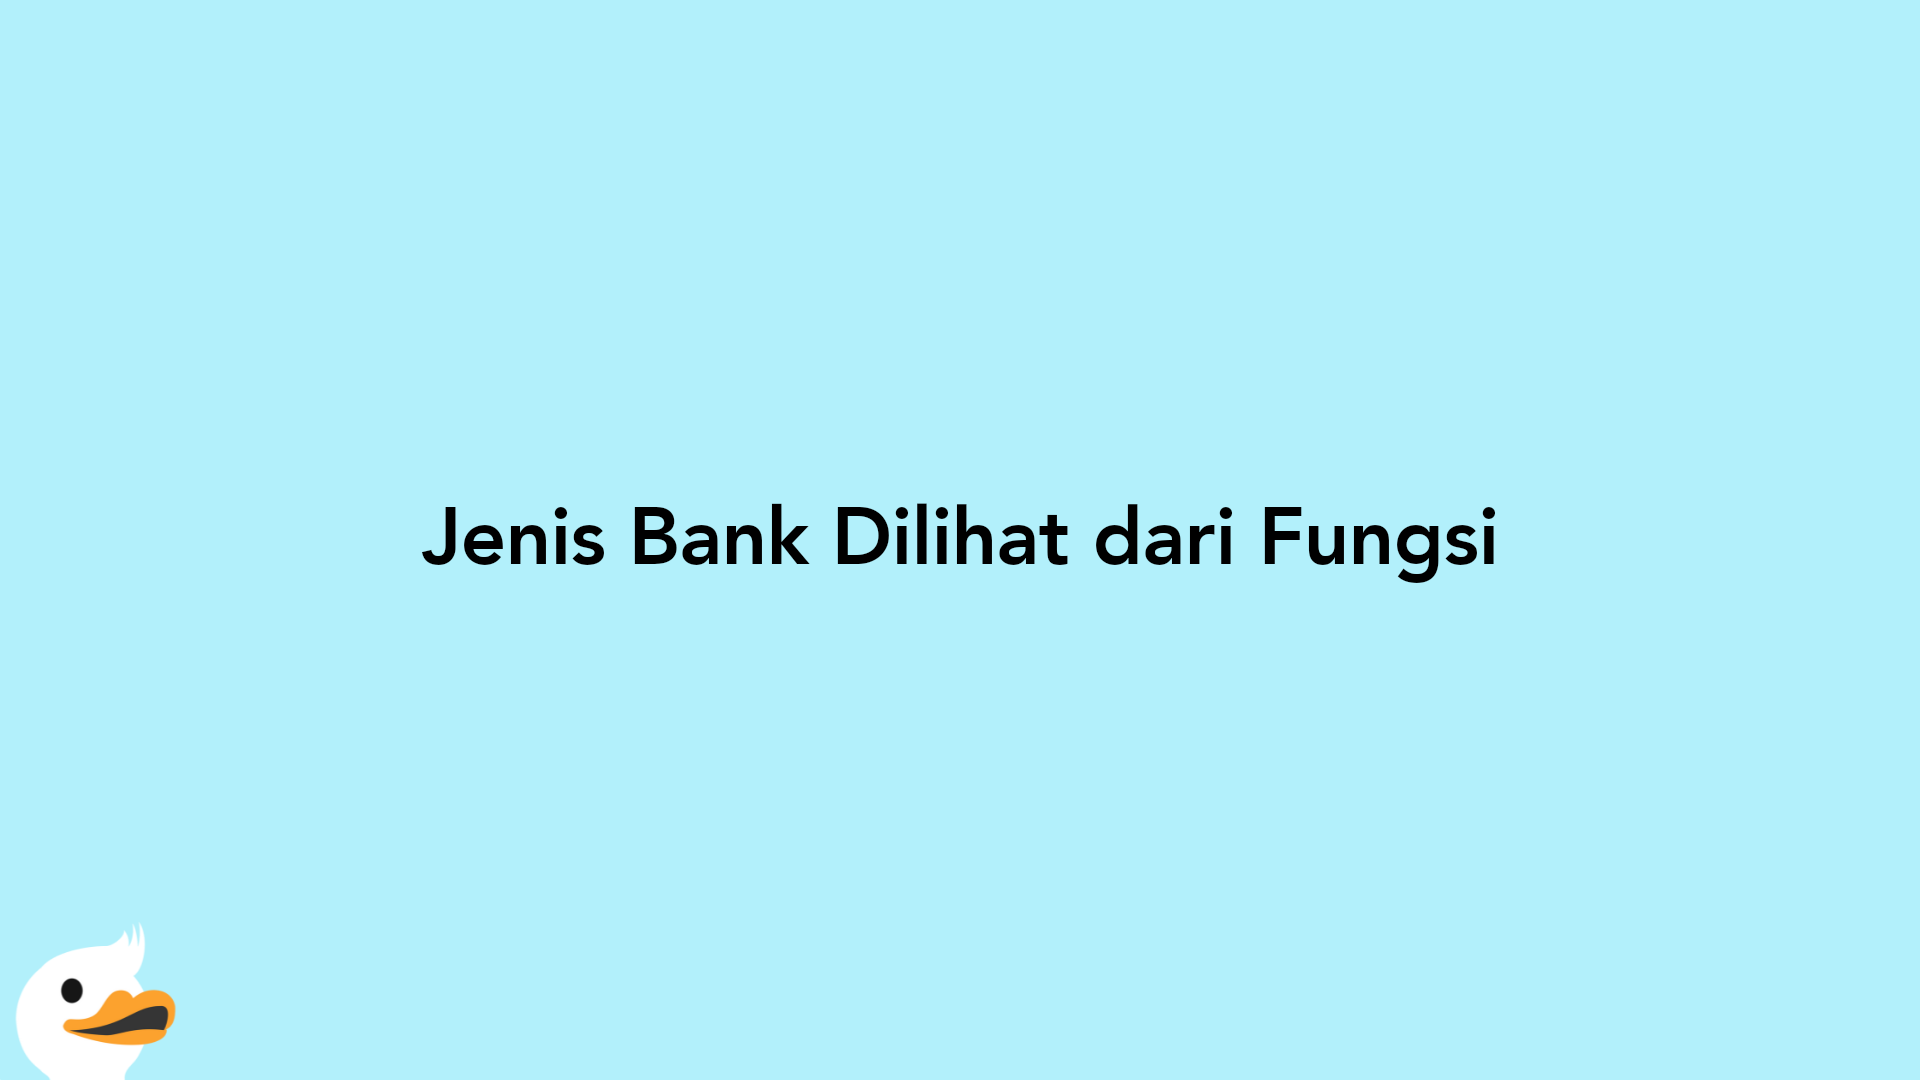 Jenis Bank Dilihat dari Fungsi